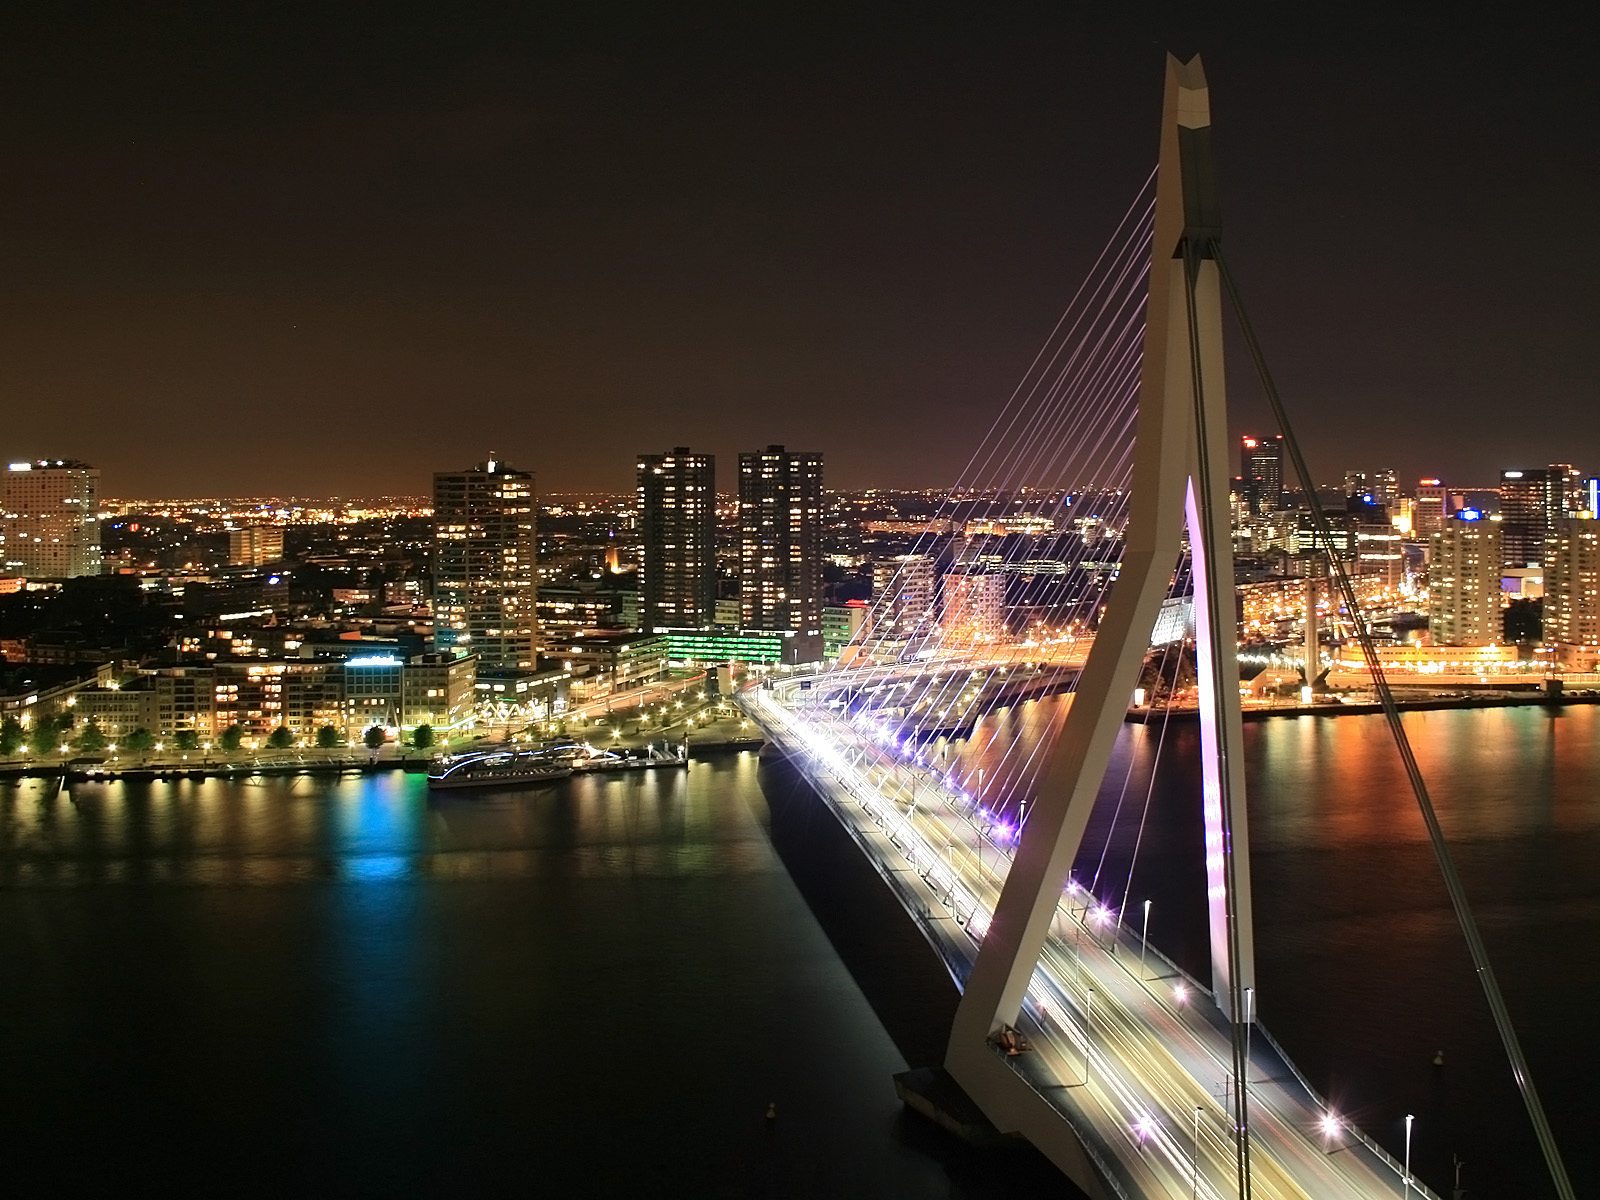 fondo de pantalla de los 10 mejores del mundo,paisaje urbano,área metropolitana,noche,puente suspendido en cables,ciudad